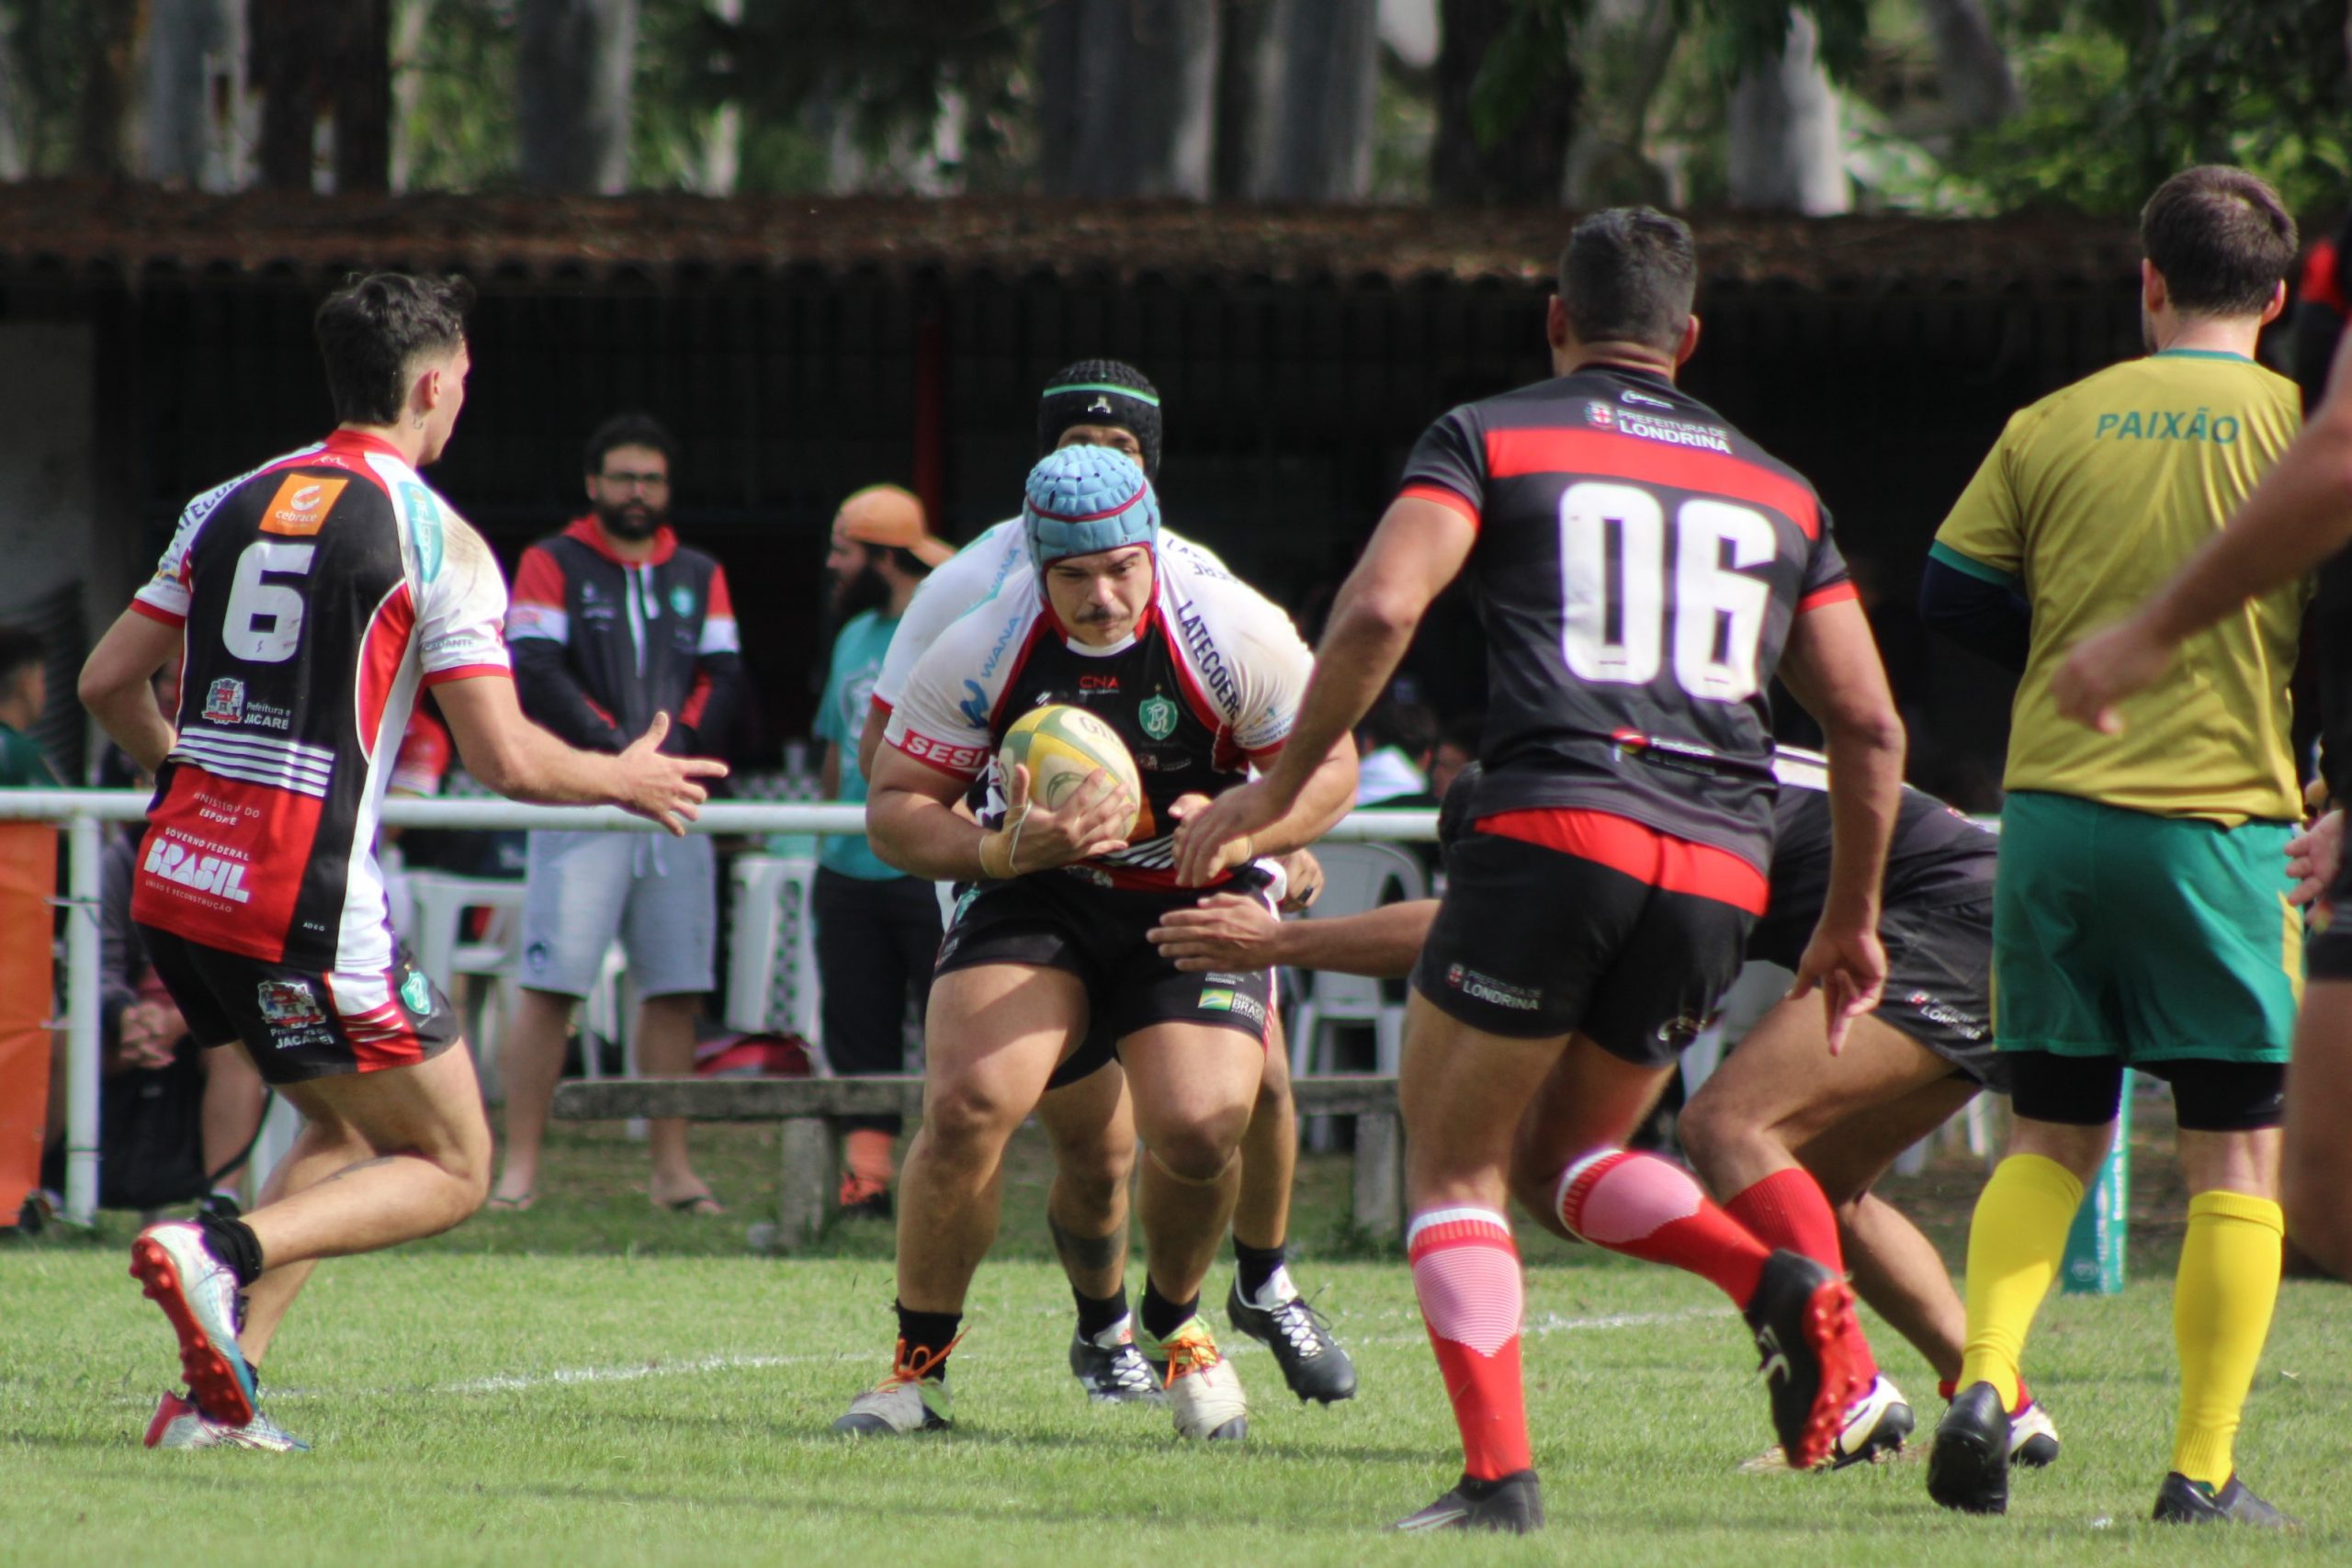 Mata-mata do Campeonato Paulista e Pequi Sevens são os destaques do sábado de rugby estadual